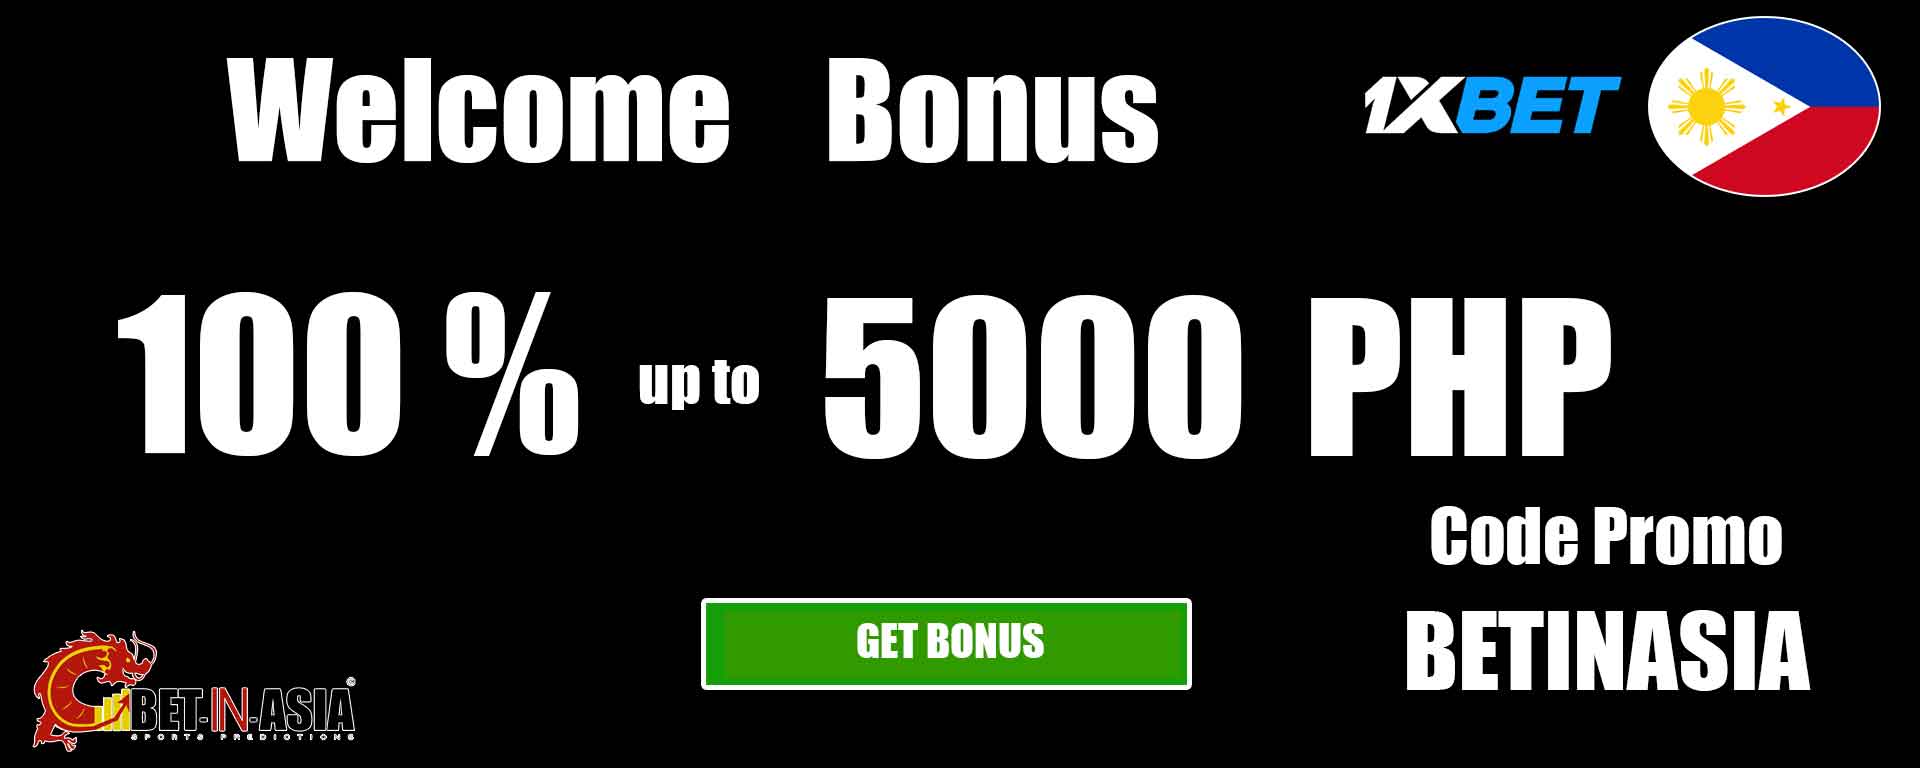 1xbet Philippines welcome bonus 100 % on first deposit